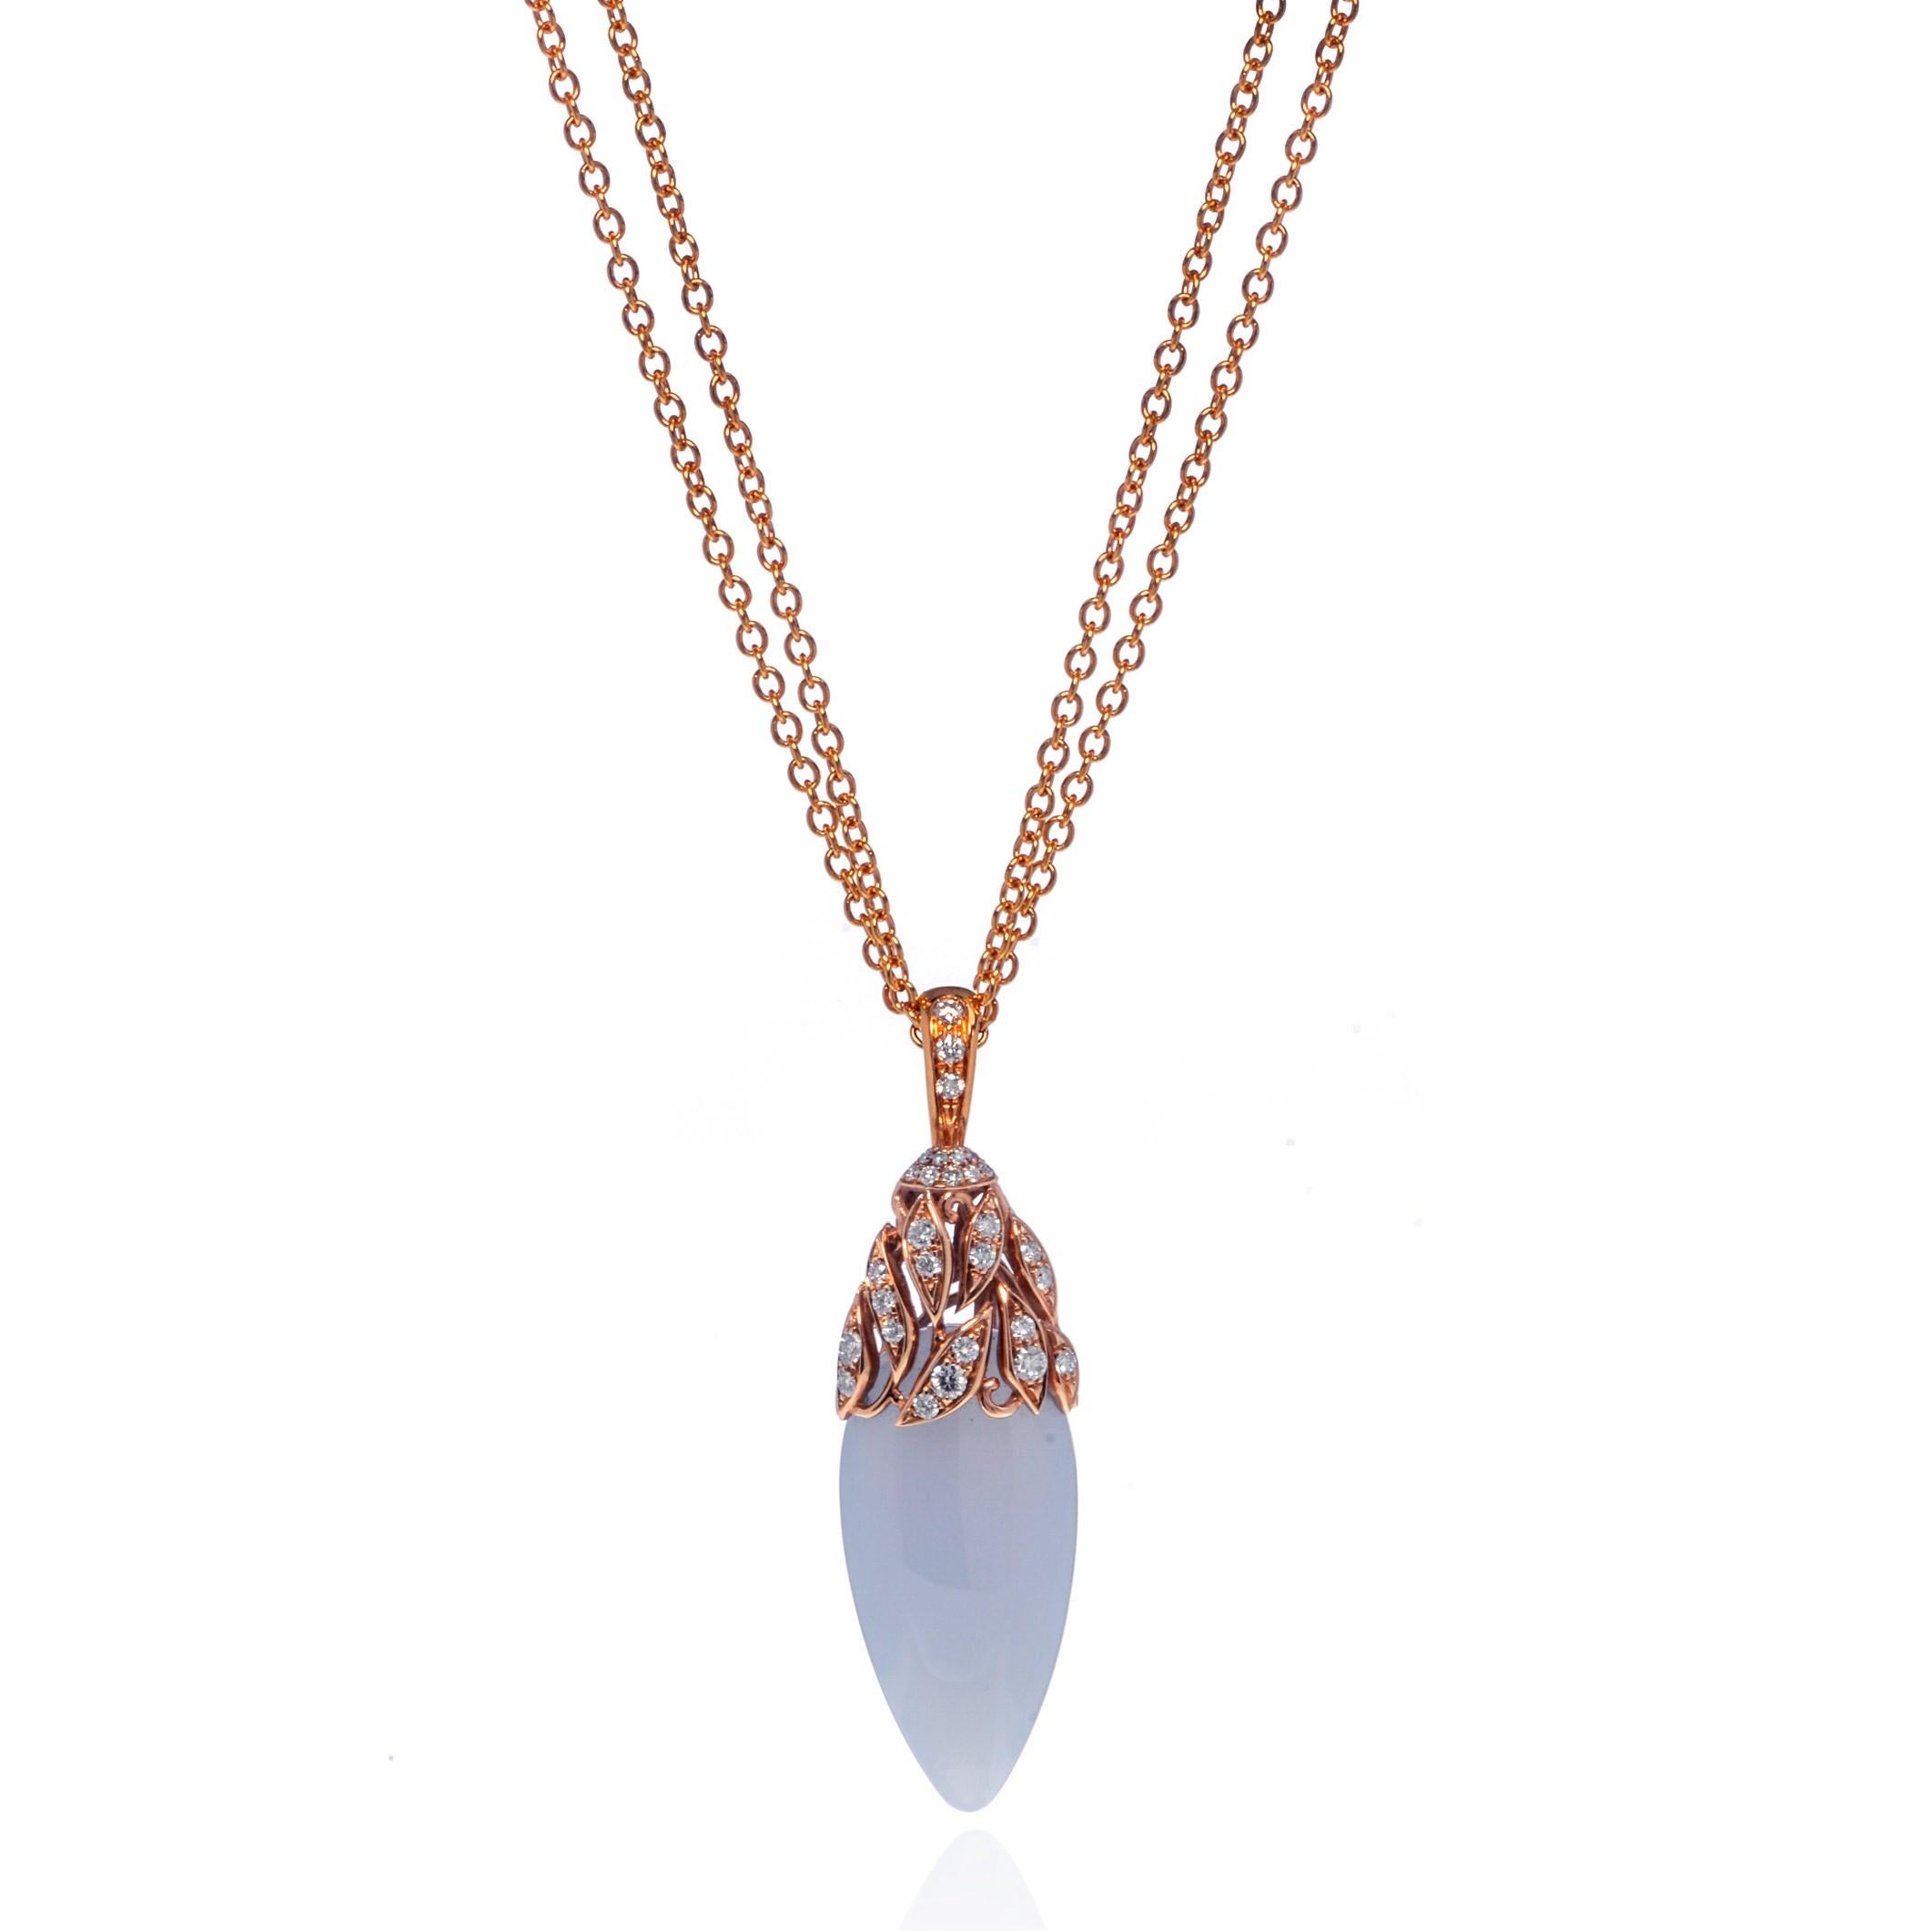 Magnifique collier à pendentifs en calcédoine et diamants de Luca Carati. Fabriqué en or rose 18K. Poids total de la calcédoine : 5,40 grammes. Poids total des diamants : 0,45 ct. Les diamants sont de couleur G et de pureté VVS. Longueur de la